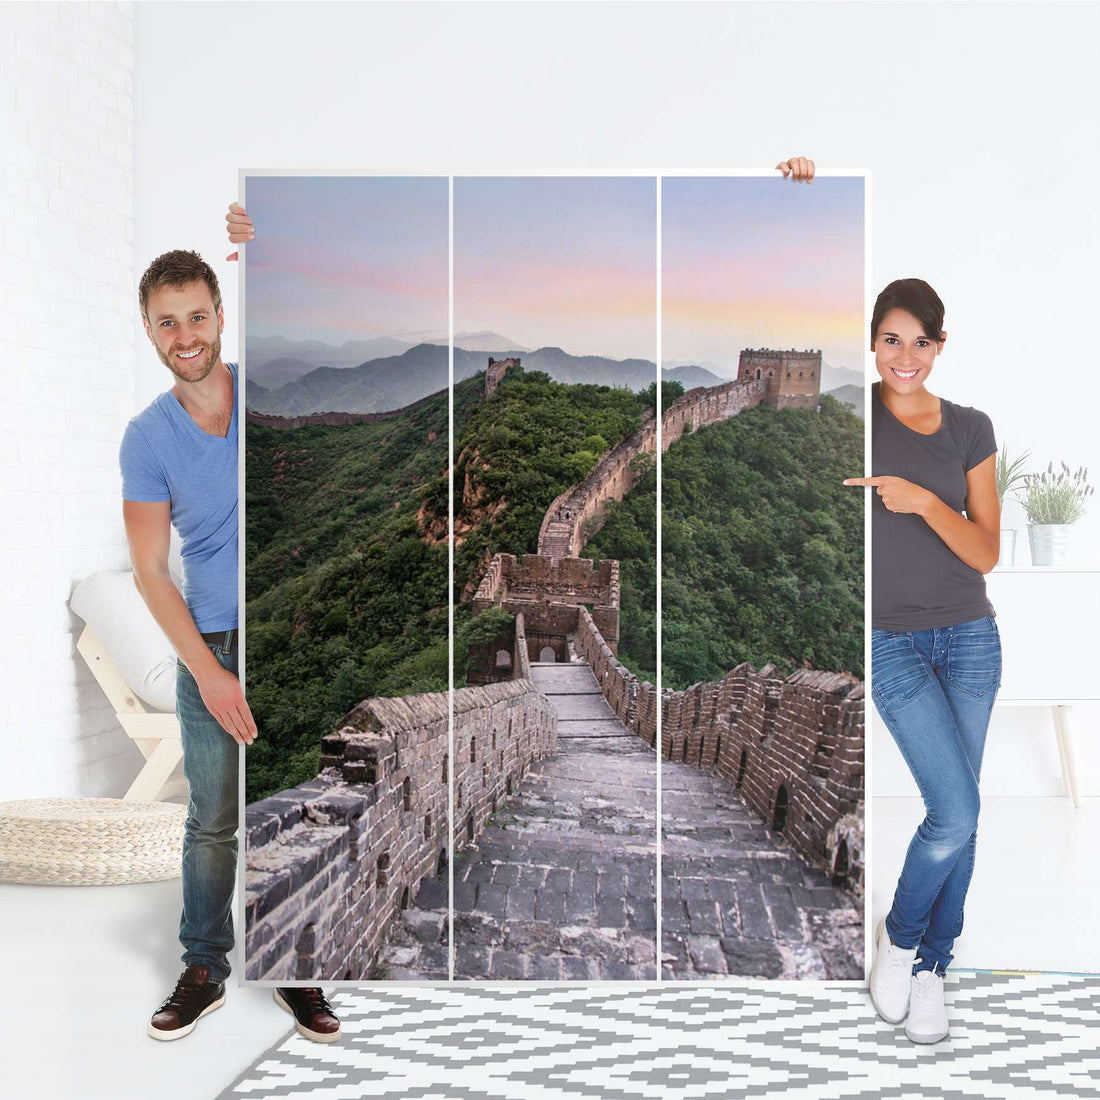 Folie für Möbel The Great Wall - IKEA Pax Schrank 201 cm Höhe - 3 Türen - Folie